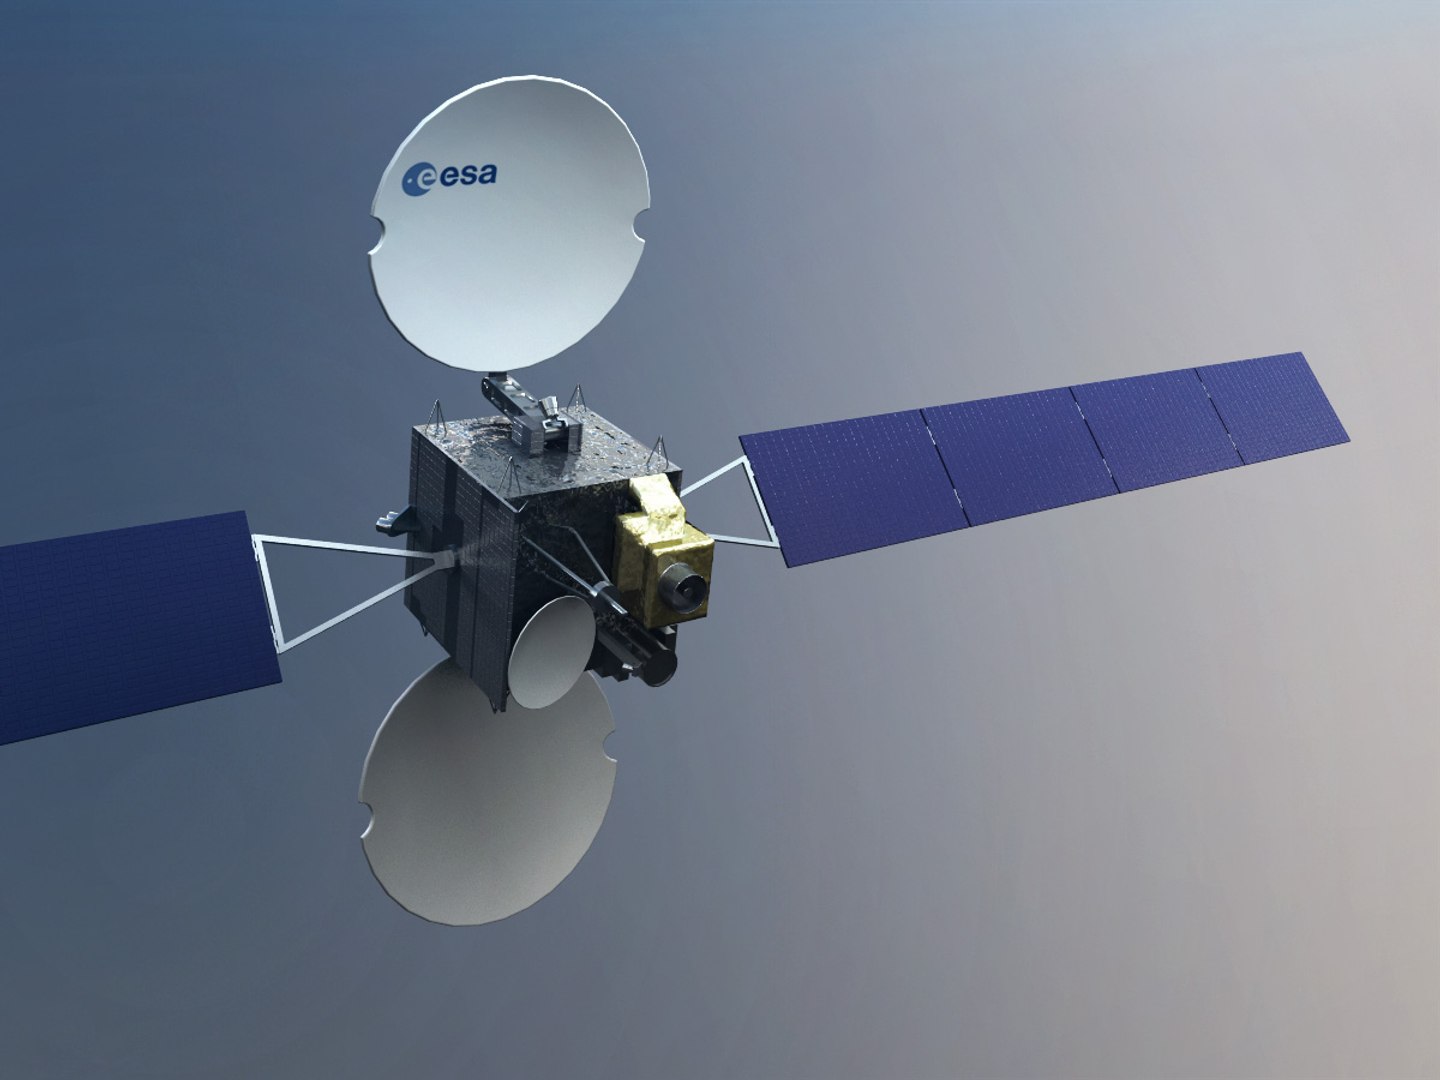 Третий спутник. Satellite 3d model. Модель спутника. Макет космического аппарата. Спутник 3d модель.